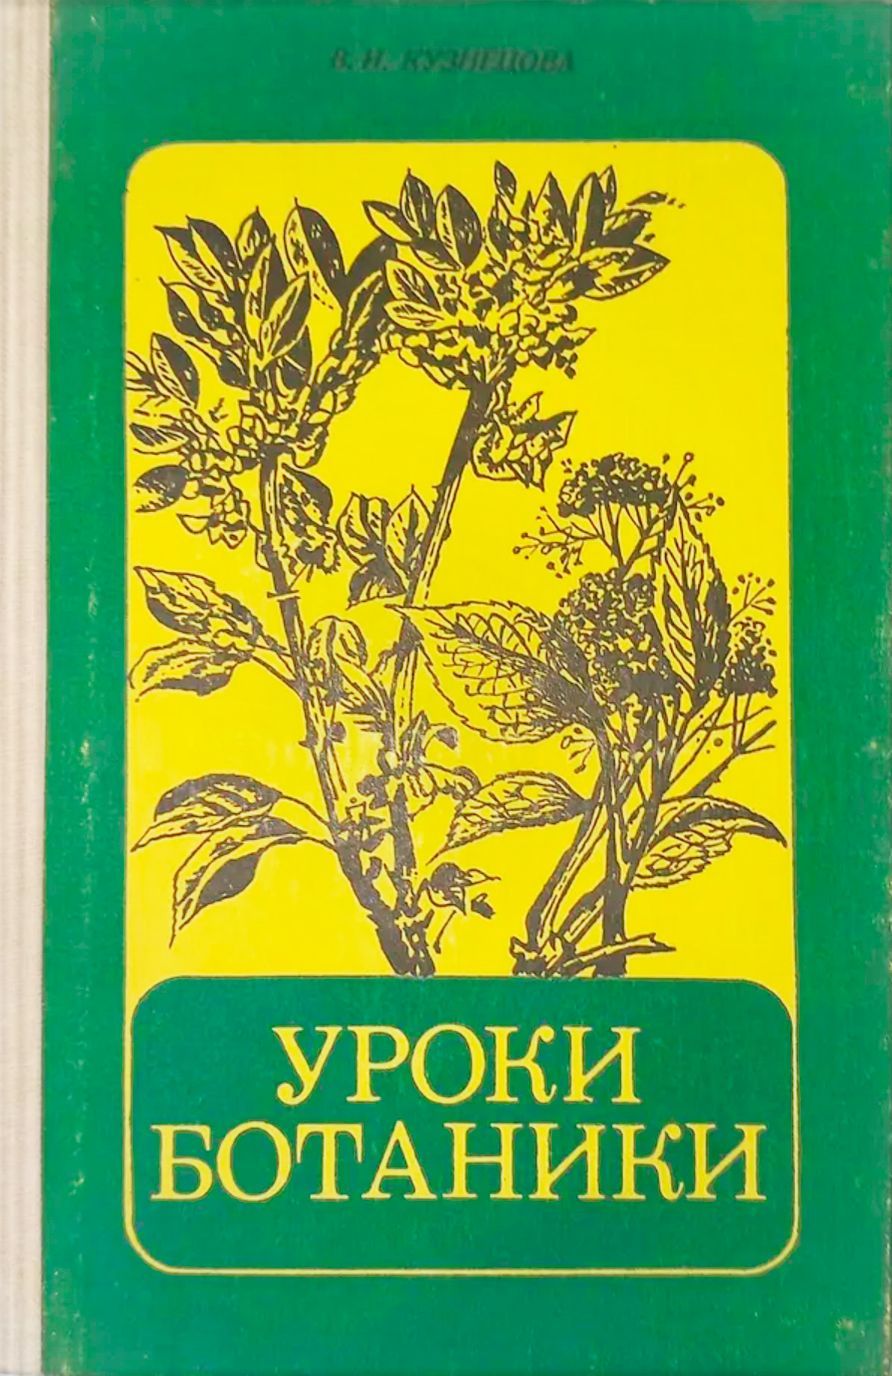 Курс по ботанике. Уроки ботаники книга. Ботаника учебник СССР. Ботаника урок. Учебник ботаники иллюстрации.